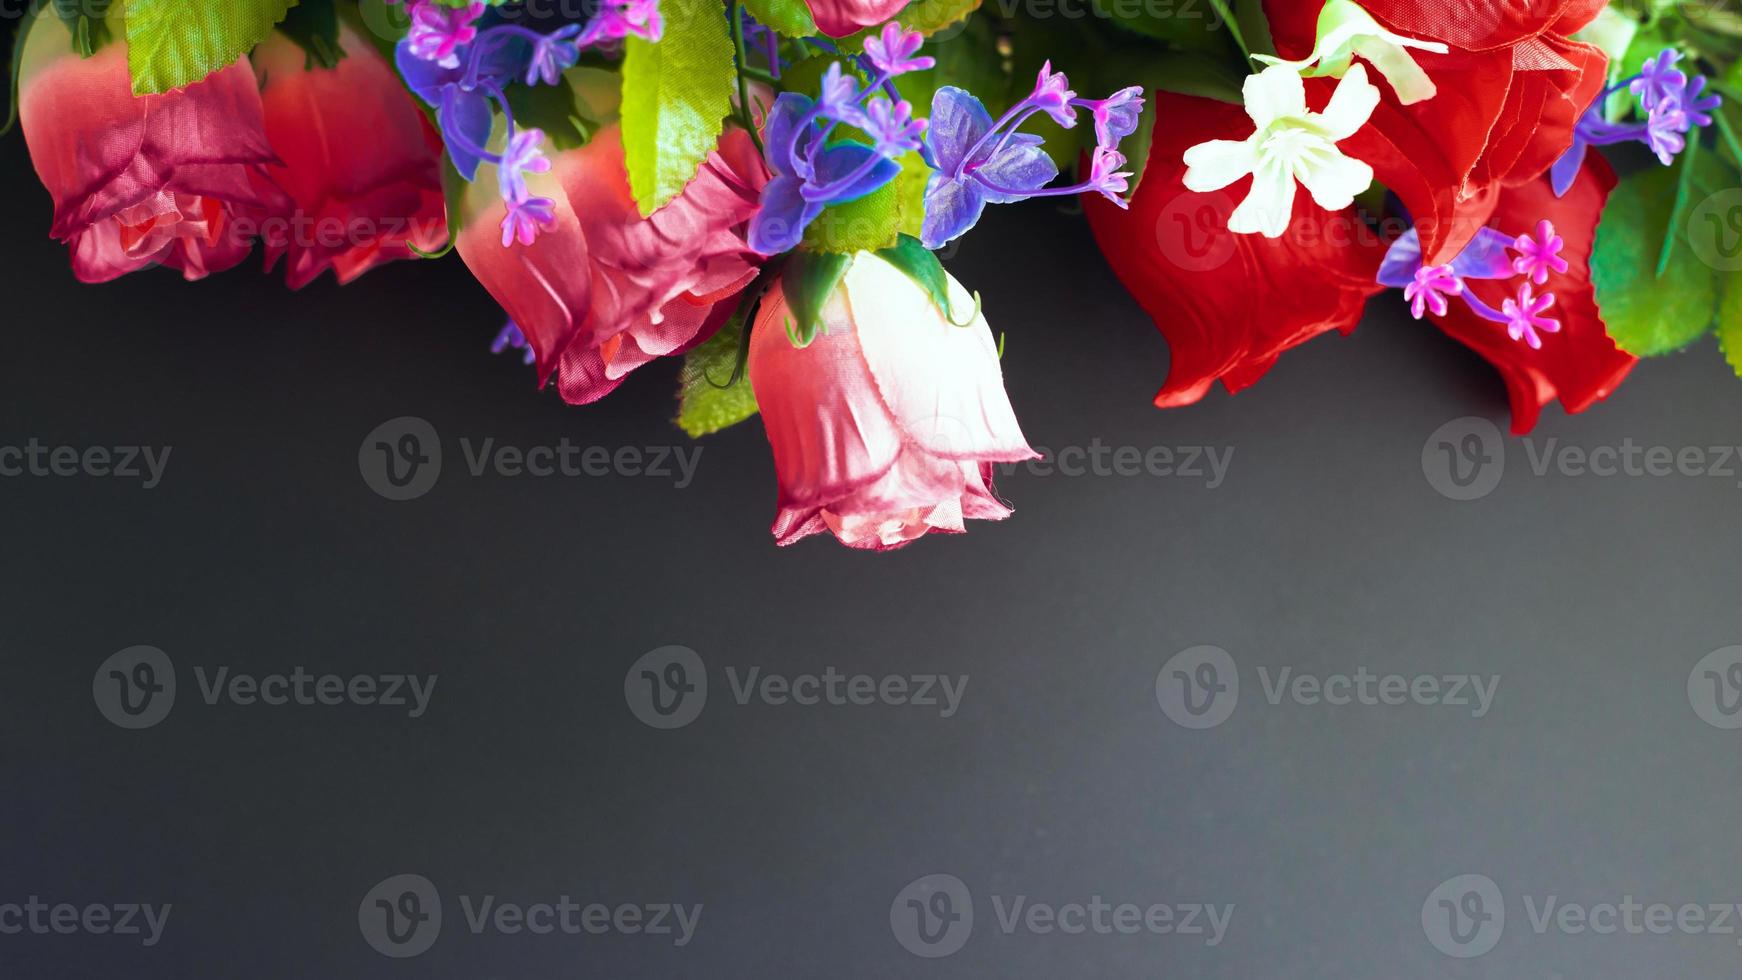 maquette commémorative avec des fleurs artificielles sur fond sombre photo